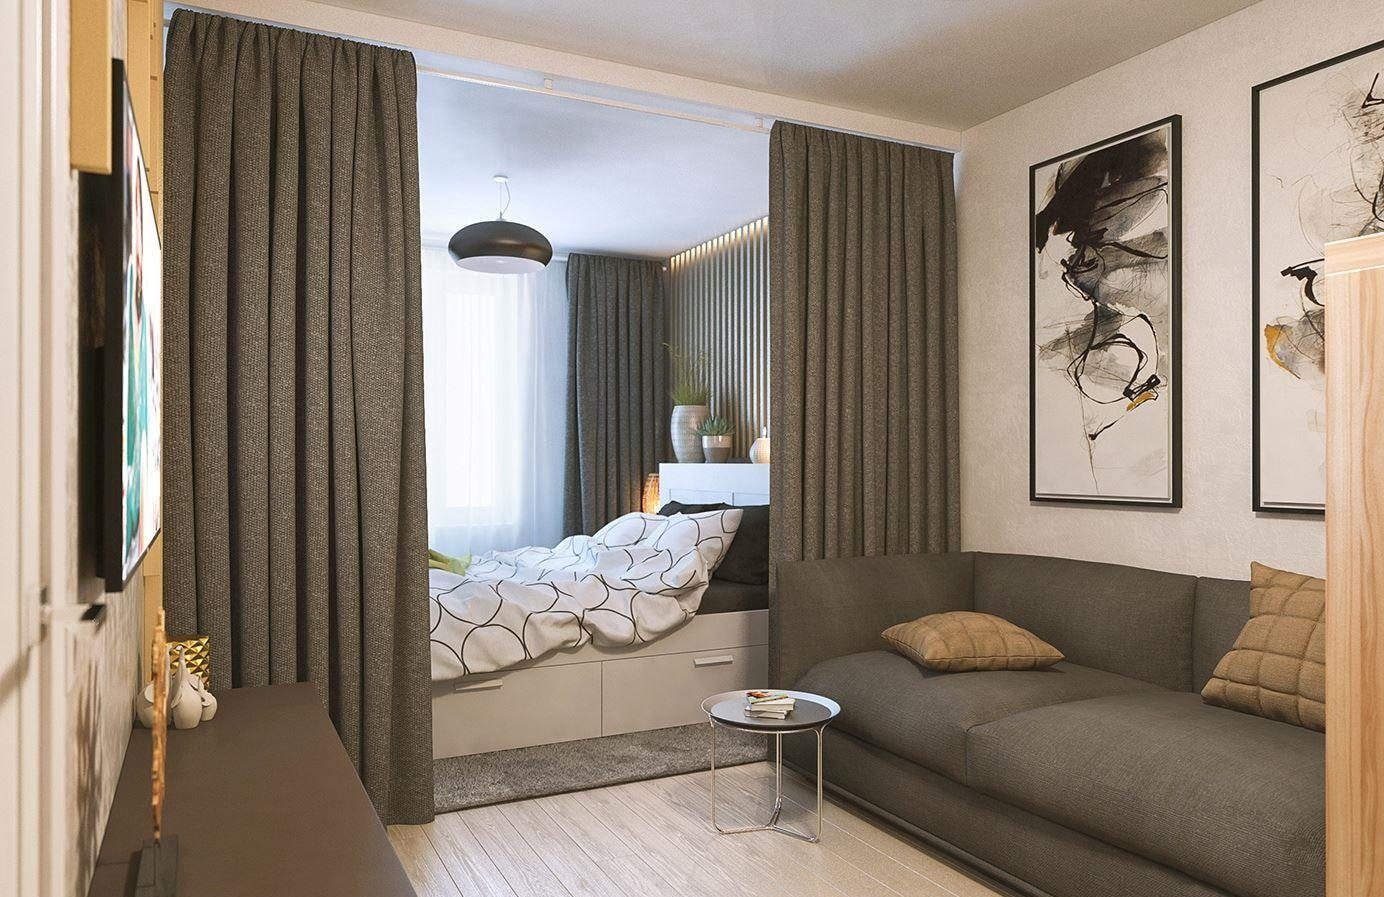 Как можно отделить спальное место в однокомнатной квартире?